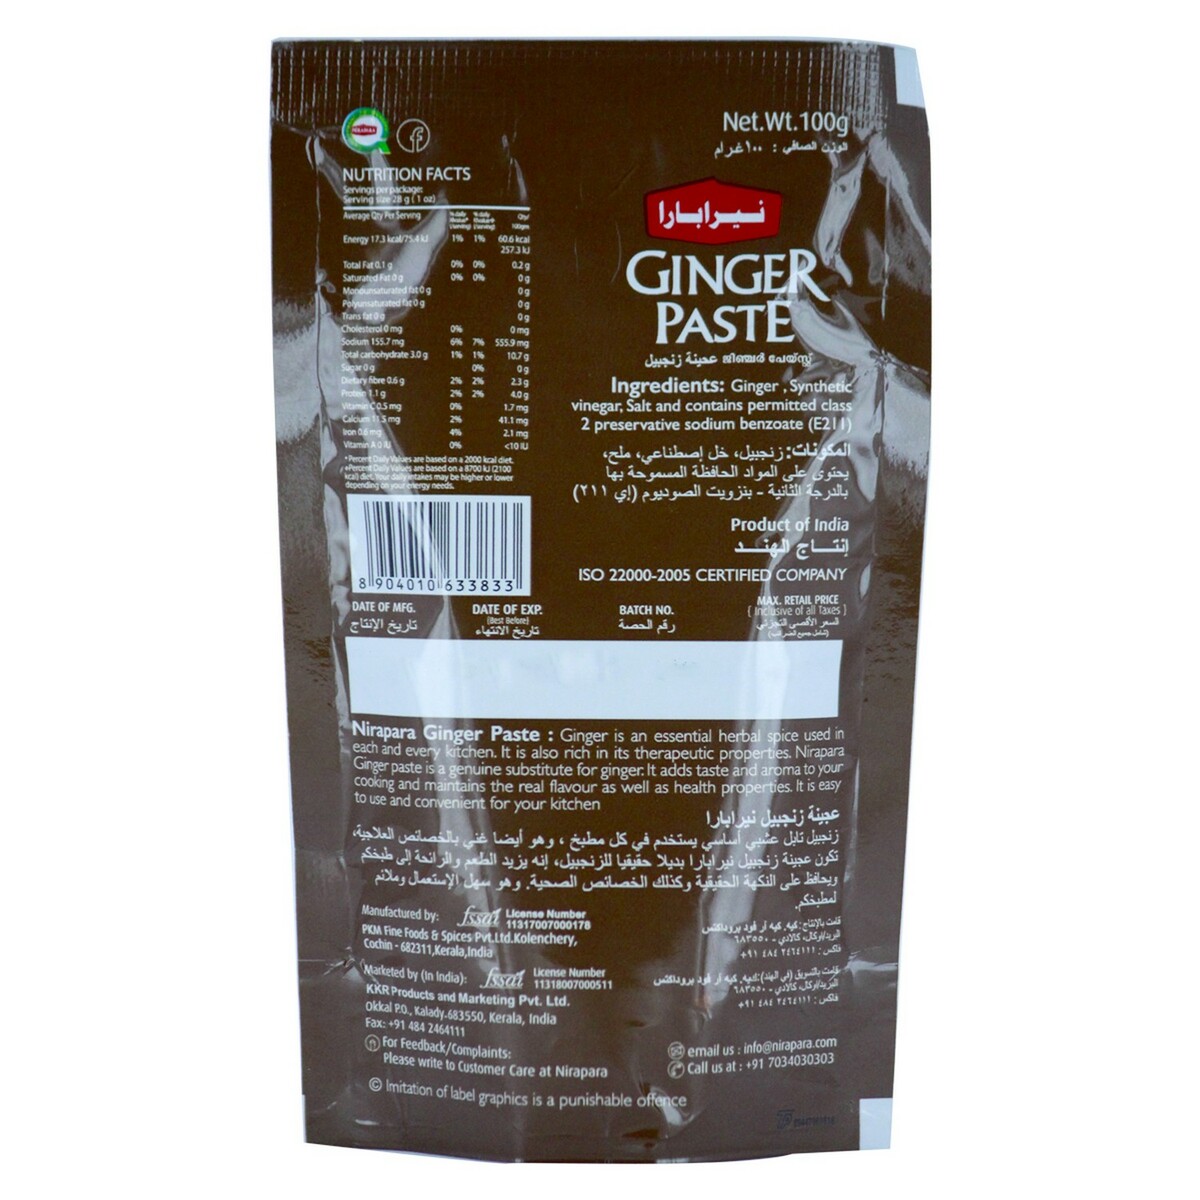 Nirapara Ginger Paste 100gm